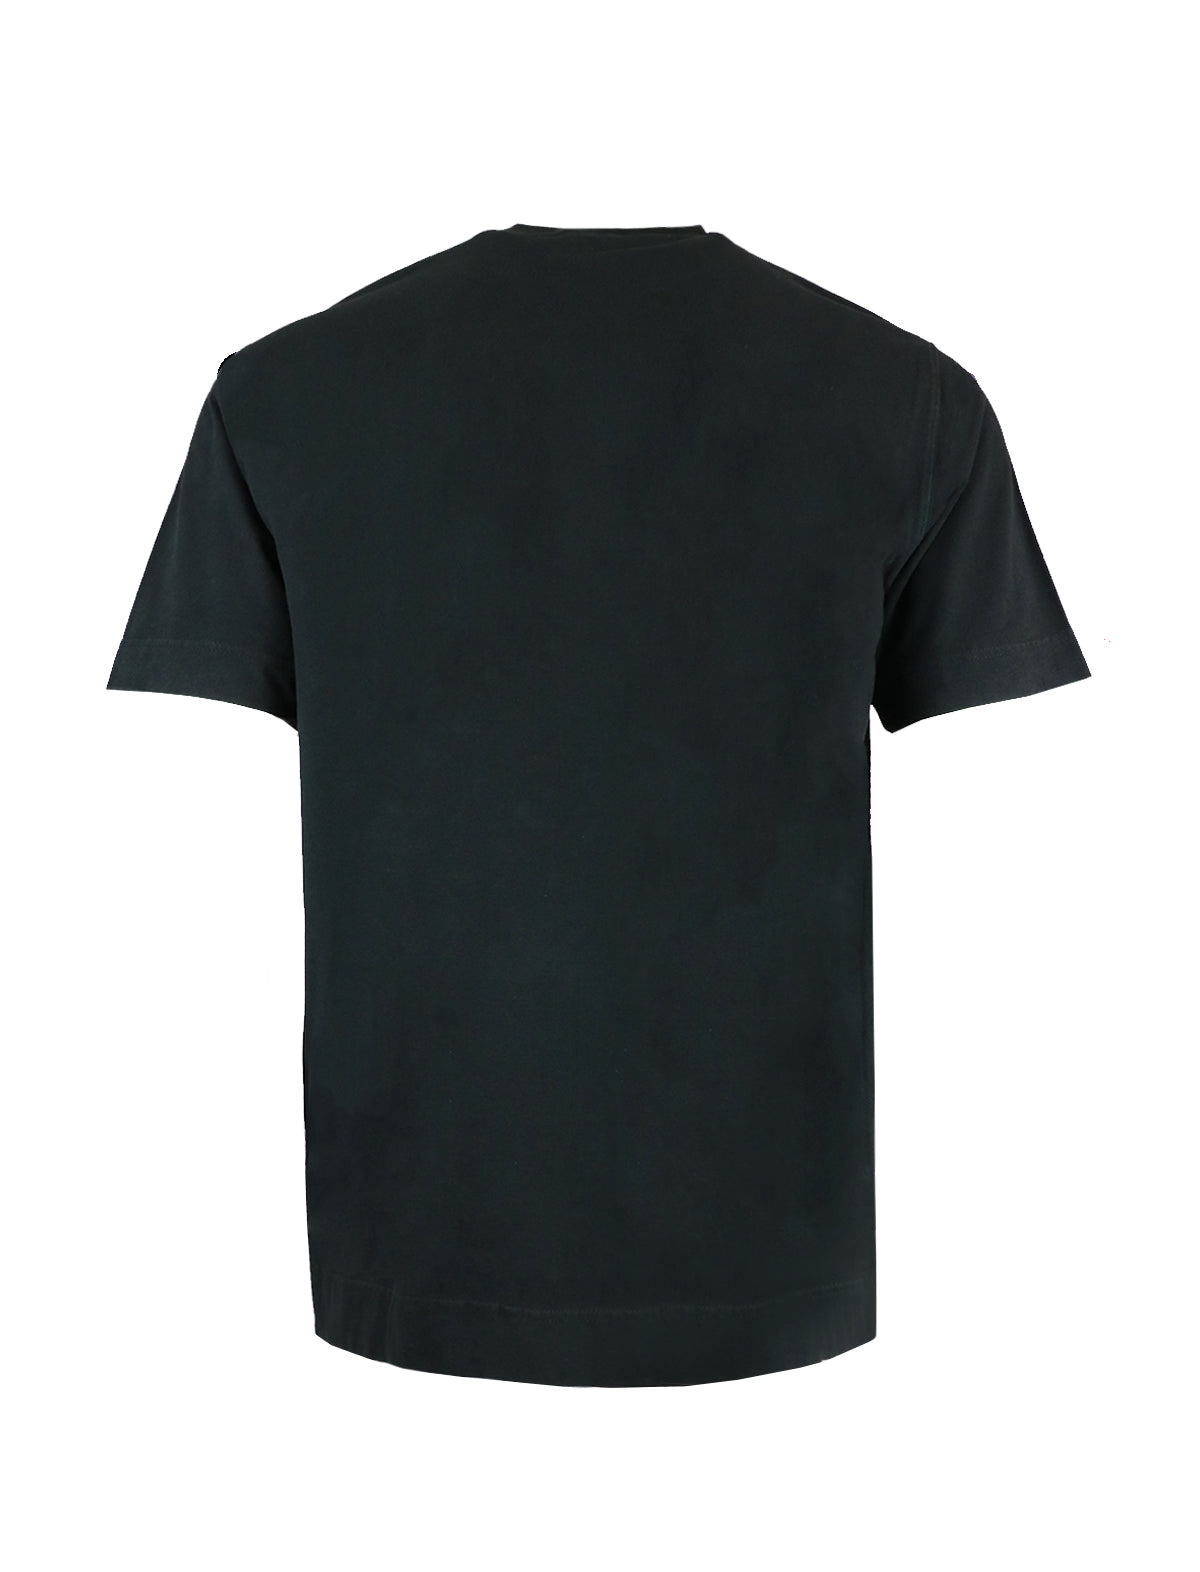 CIRCOLO 1901 Cotton-Stretch T-Shirt in Black